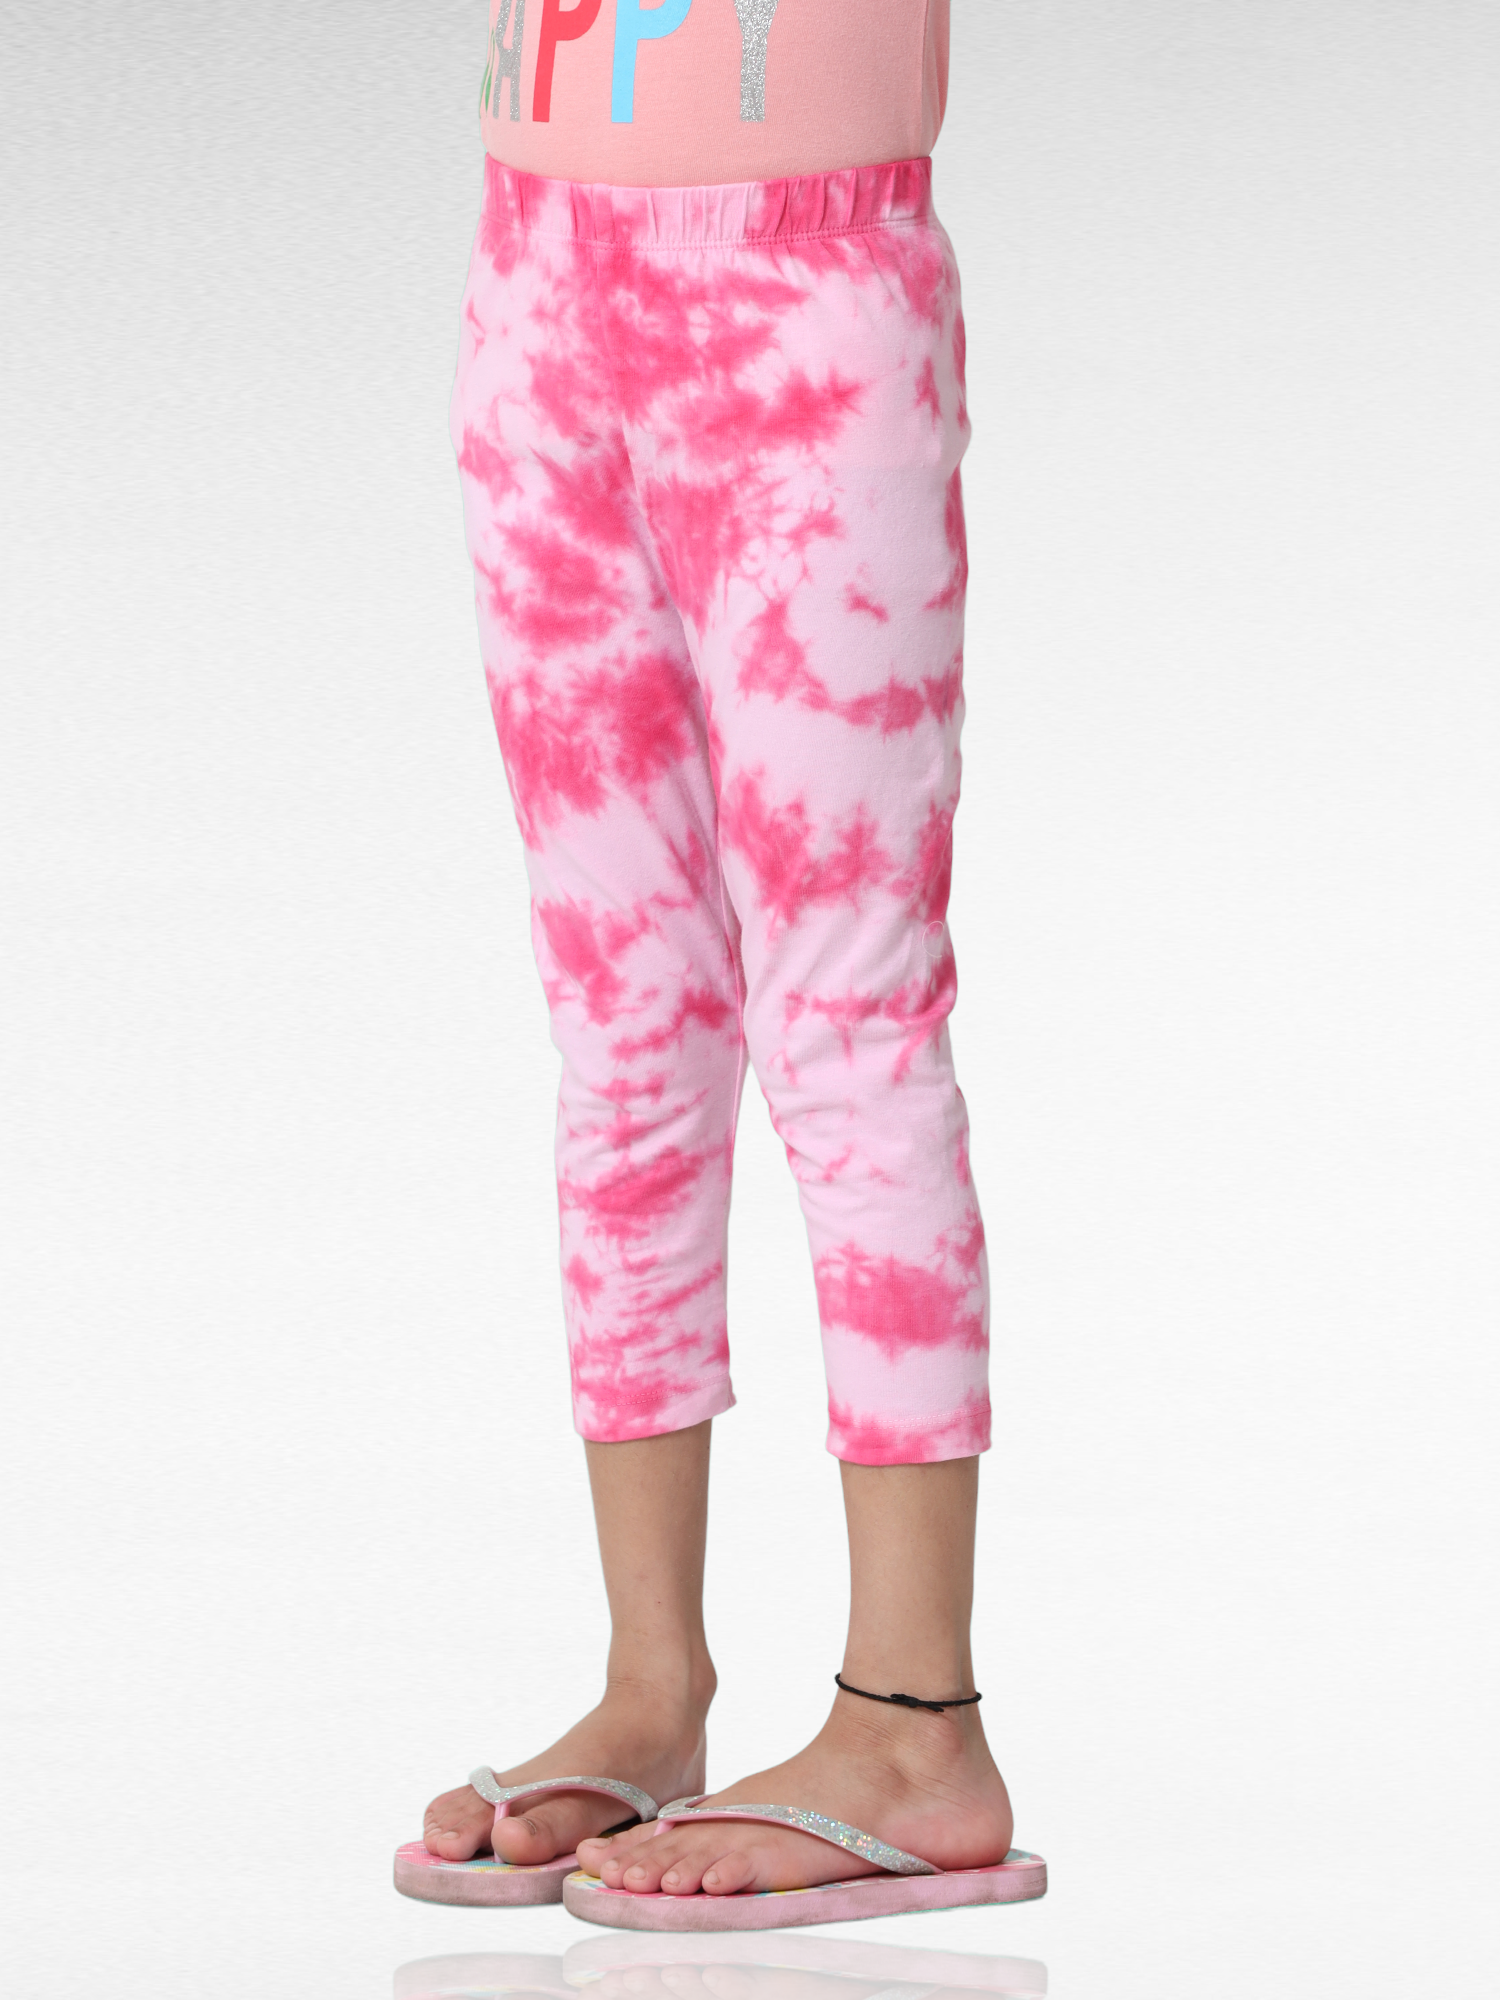 Girls | Girl pink leggings, Stylish leggings, Leggings